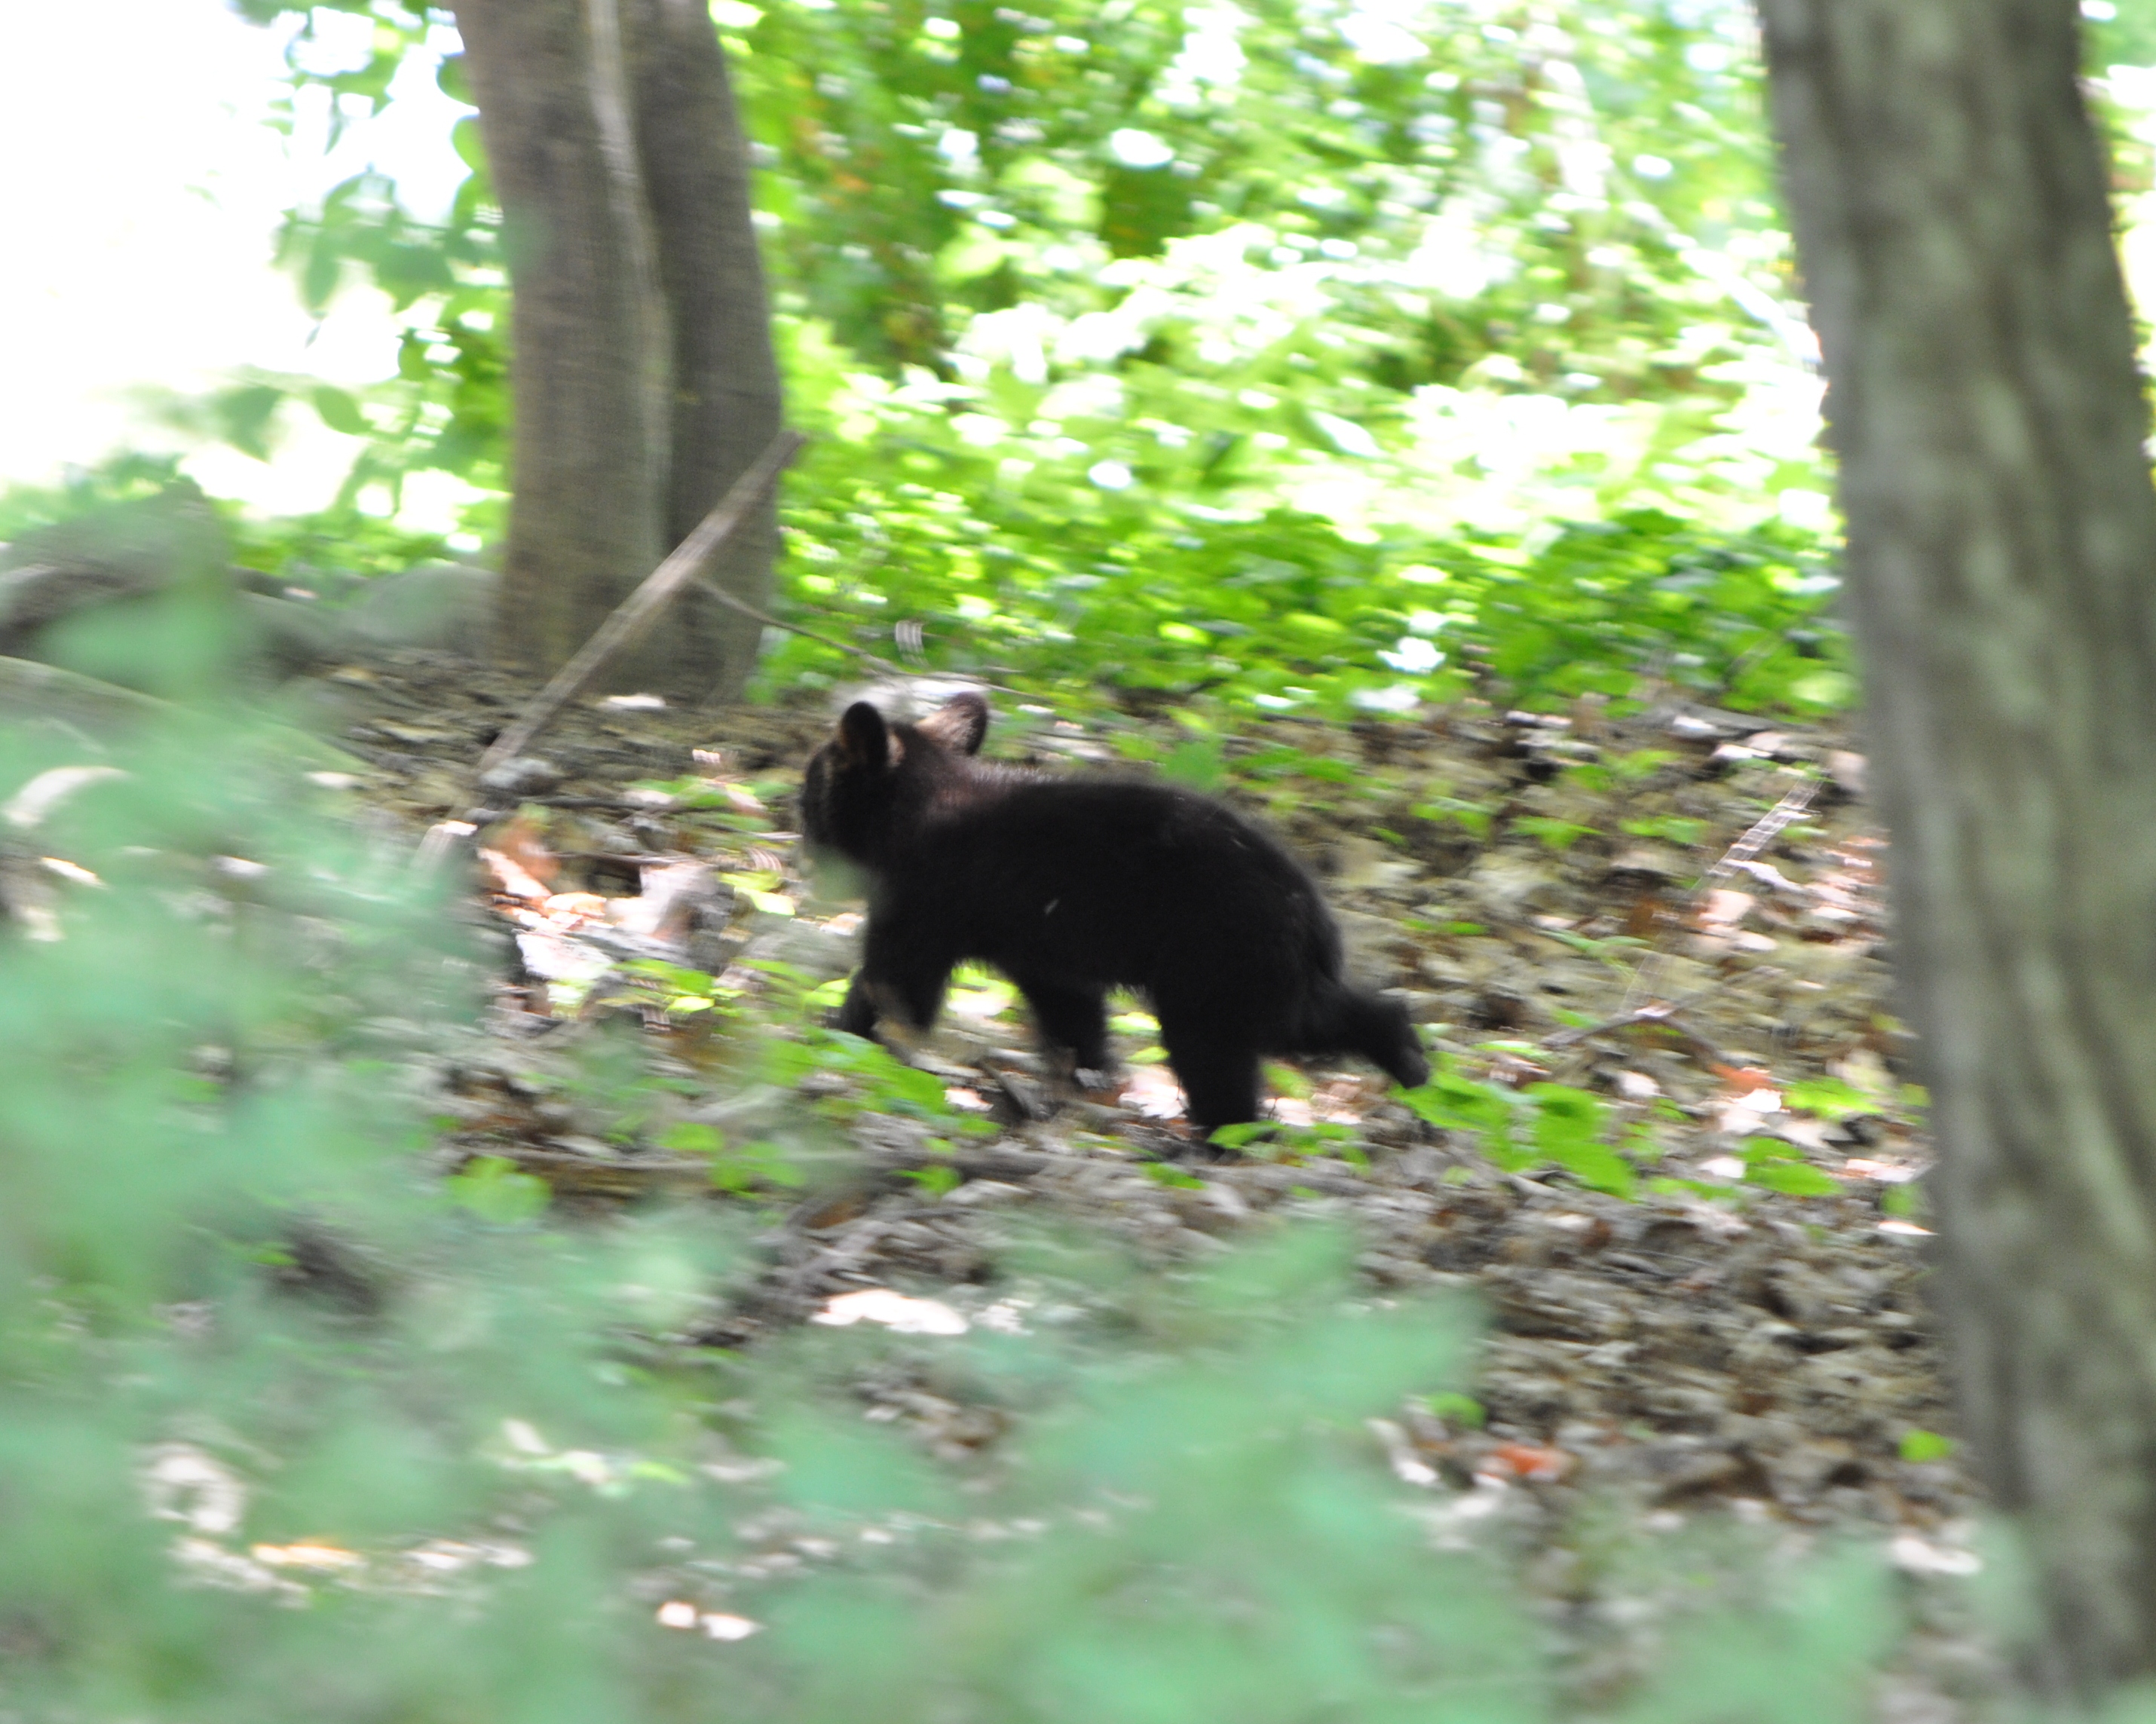 Baby black bear running through a dense, green forest.